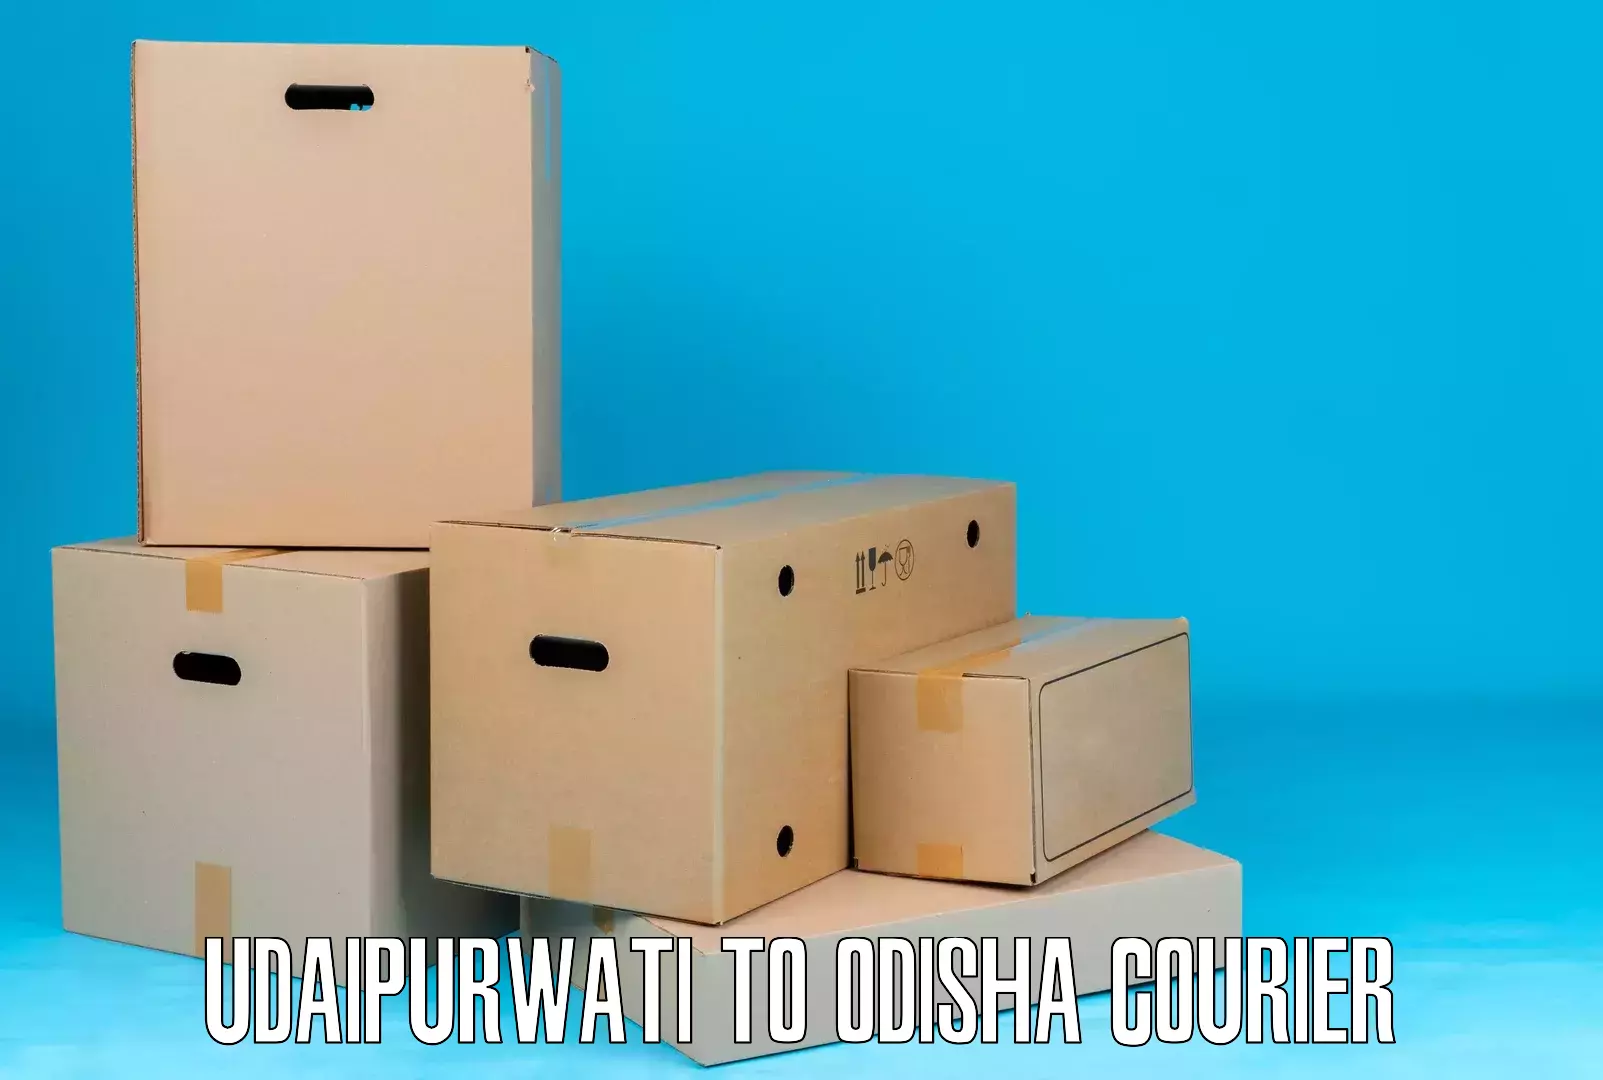 High-efficiency logistics Udaipurwati to Cuttack